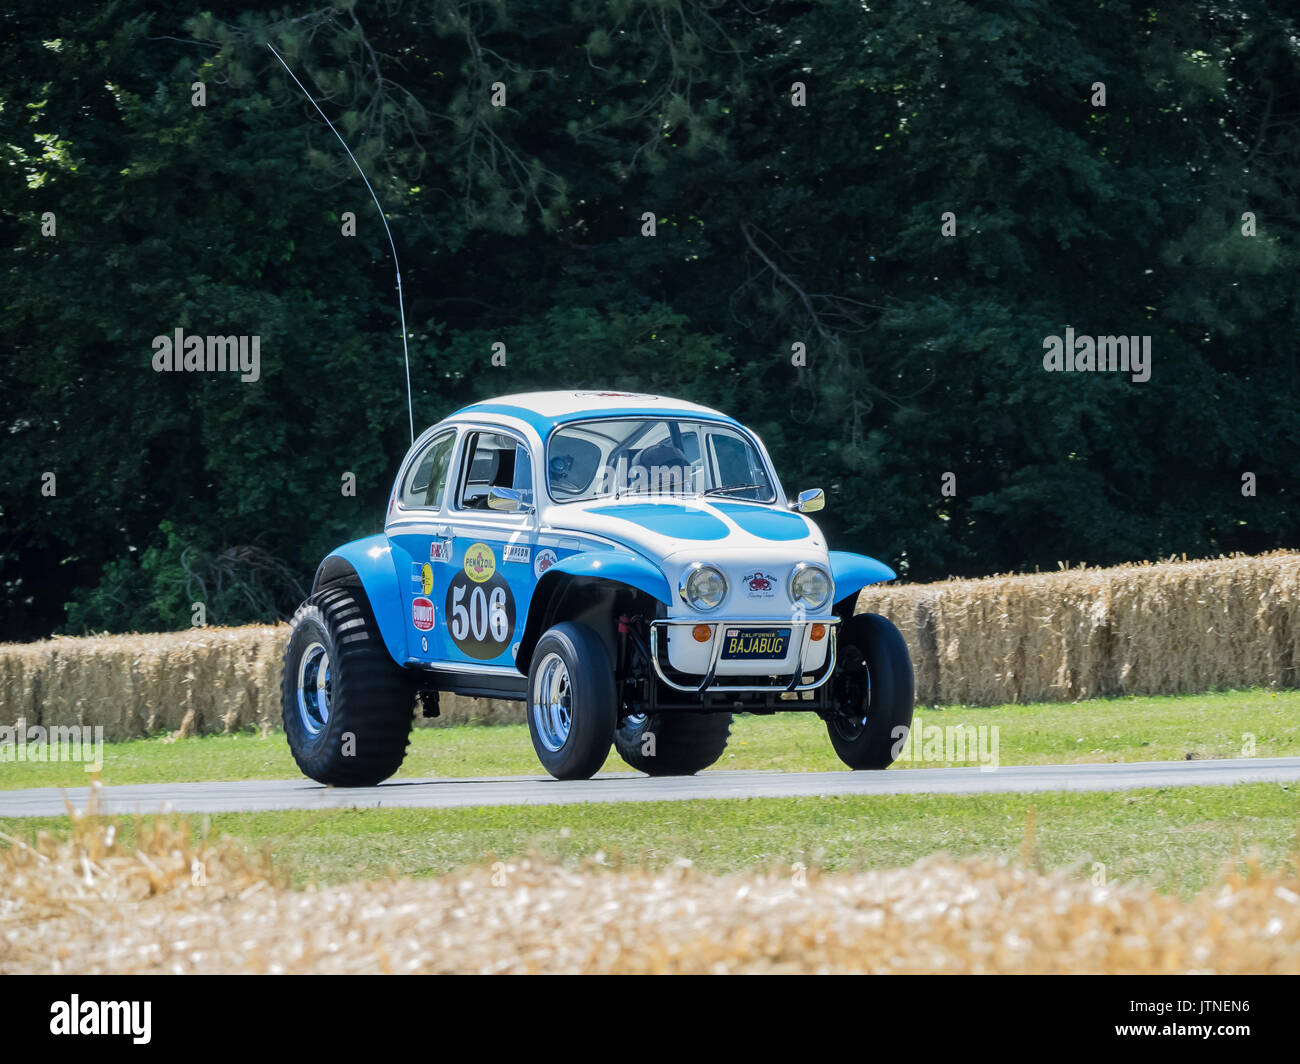 Baja Bug VW Beetle ( Tamiya Sand Scorcher modelo de tamaño completo de juguete repro) en el festival de velocidad de Goodwood 2017 Foto de stock